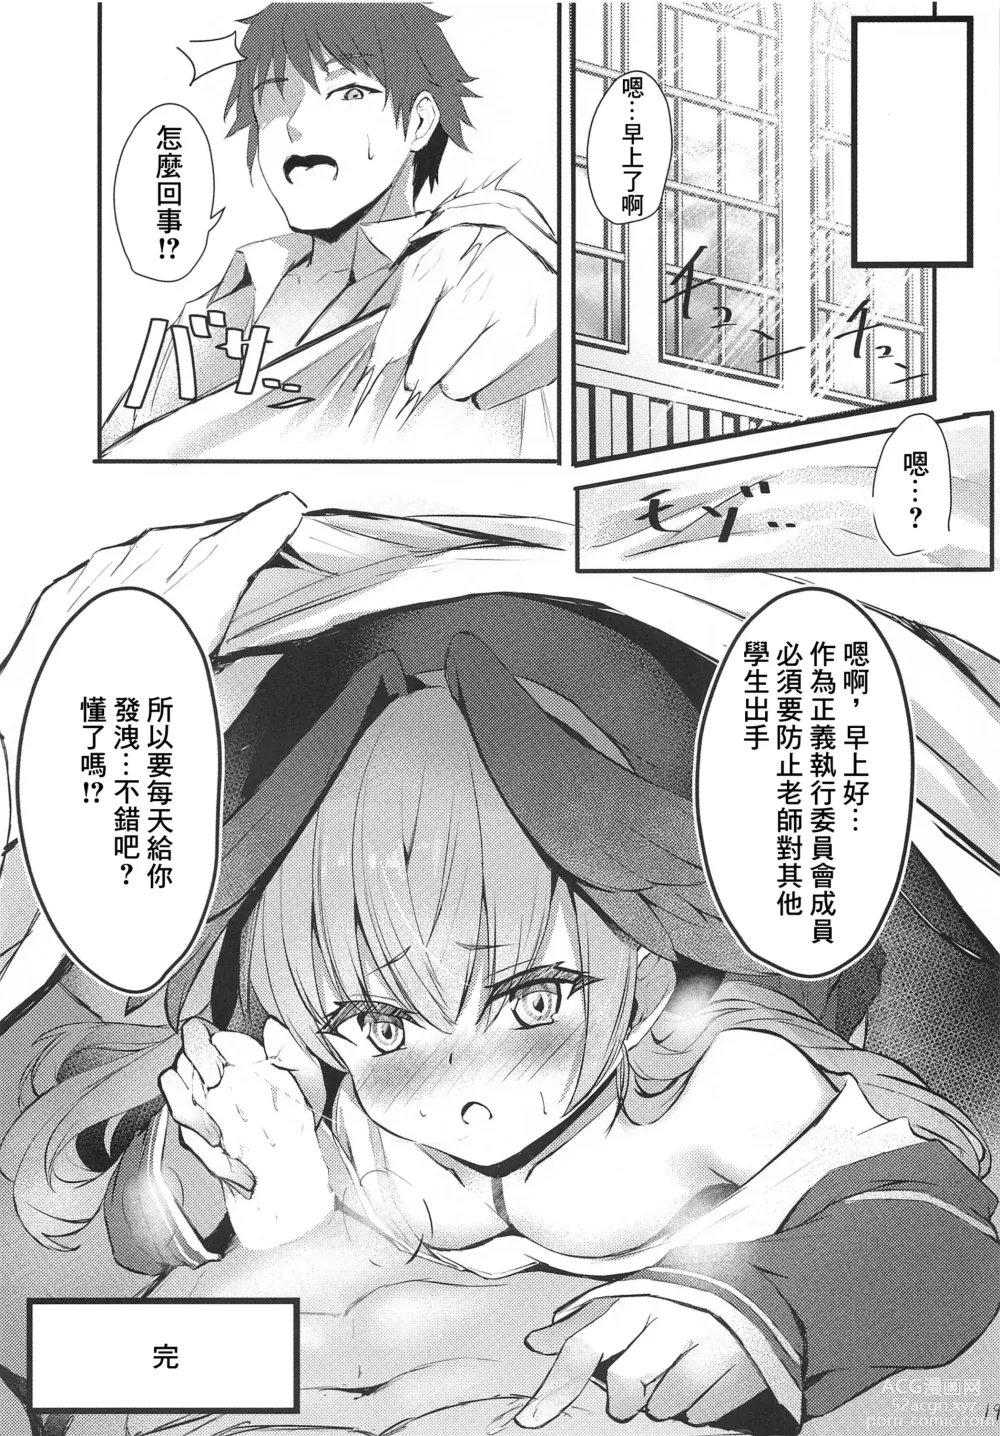 Page 20 of doujinshi Hitori Asobi Shichau Koharu o Togametai!